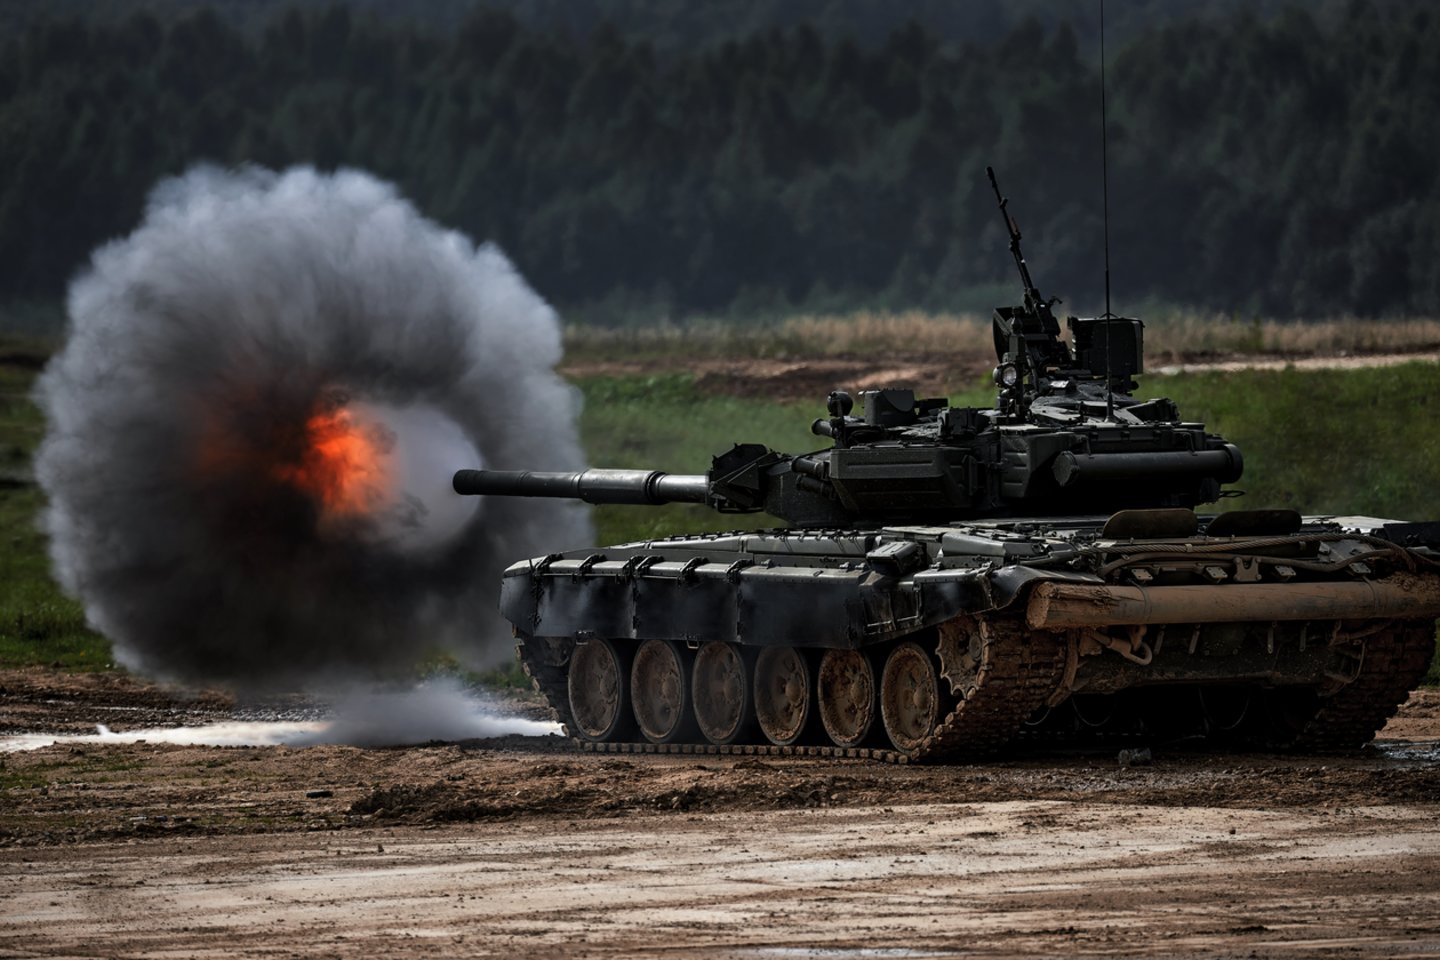  Ekspertai sako, kad mūšio lauko vaizdai rodo, jog Rusijos tankai turi defektą, apie kurį Vakarų kariškiai žino jau ne vieną dešimtmetį.<br> 123rf nuotr.